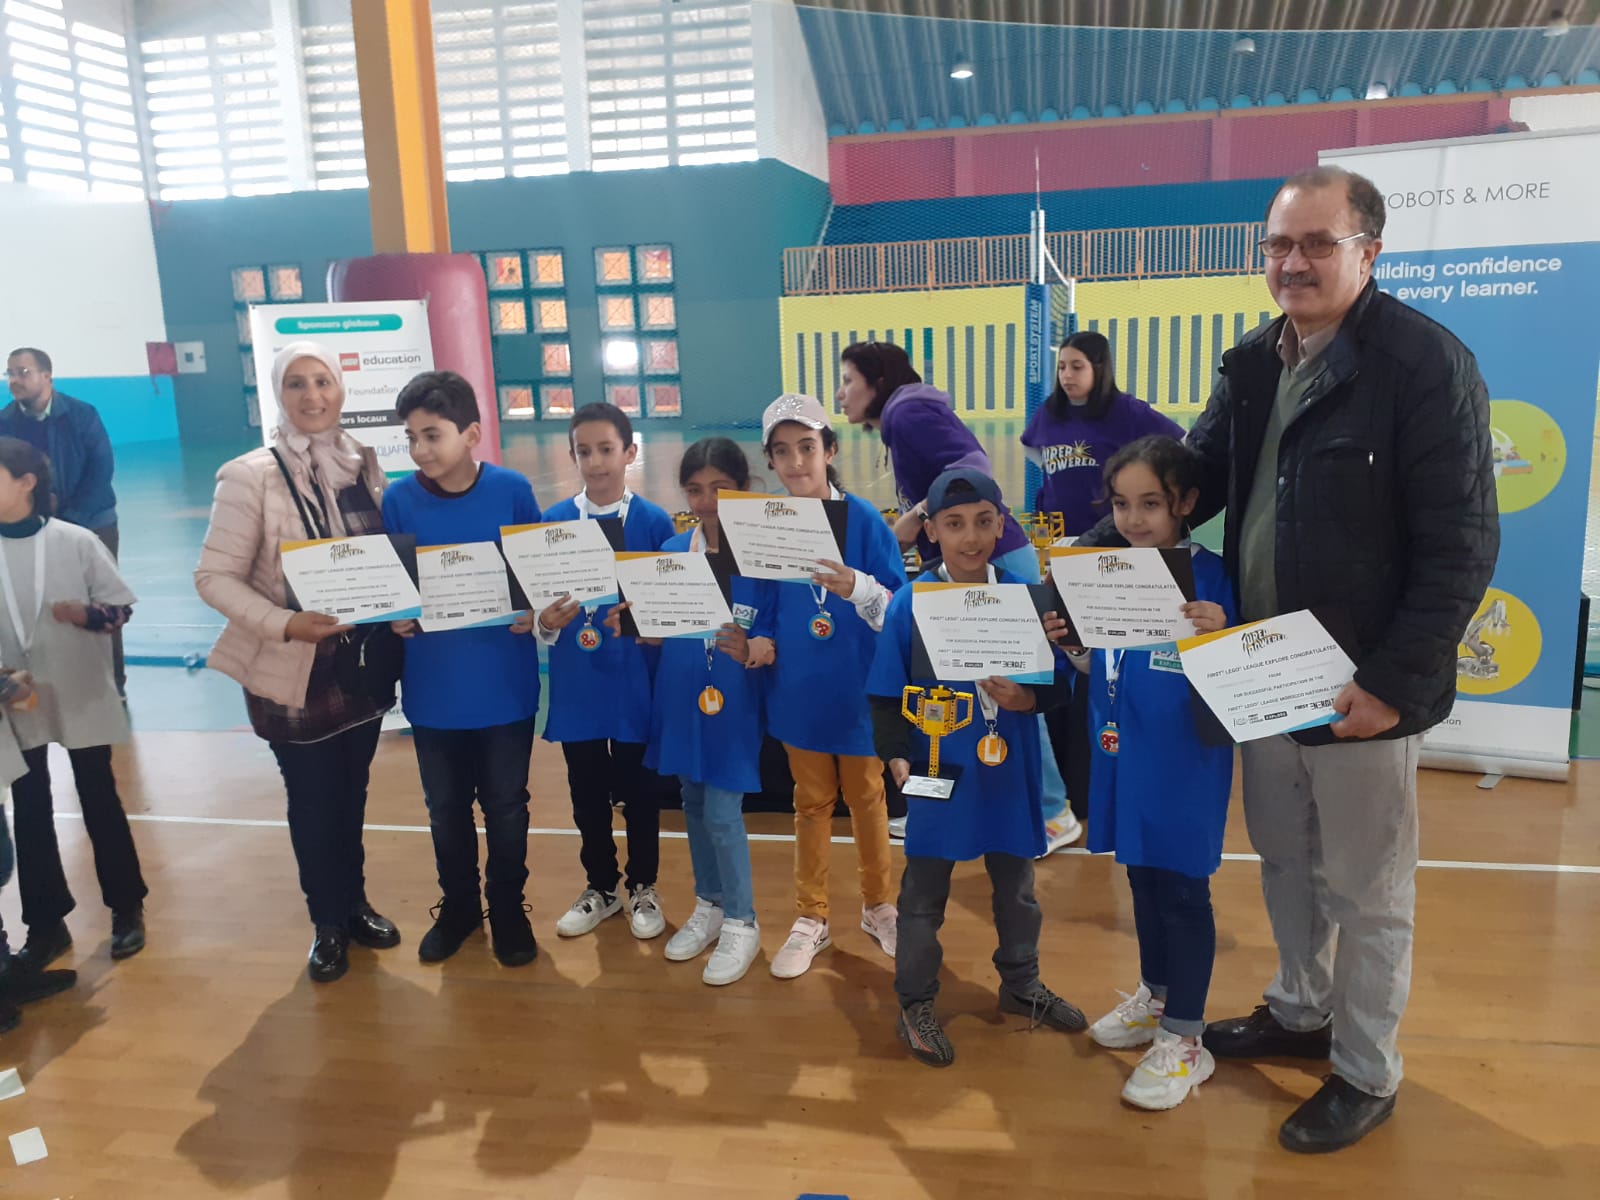 مراكش: مدرسة الأندلس الابتدائية تفوز بالمرتبة الأولى للمنافسة الوطنية للروبوتيك.